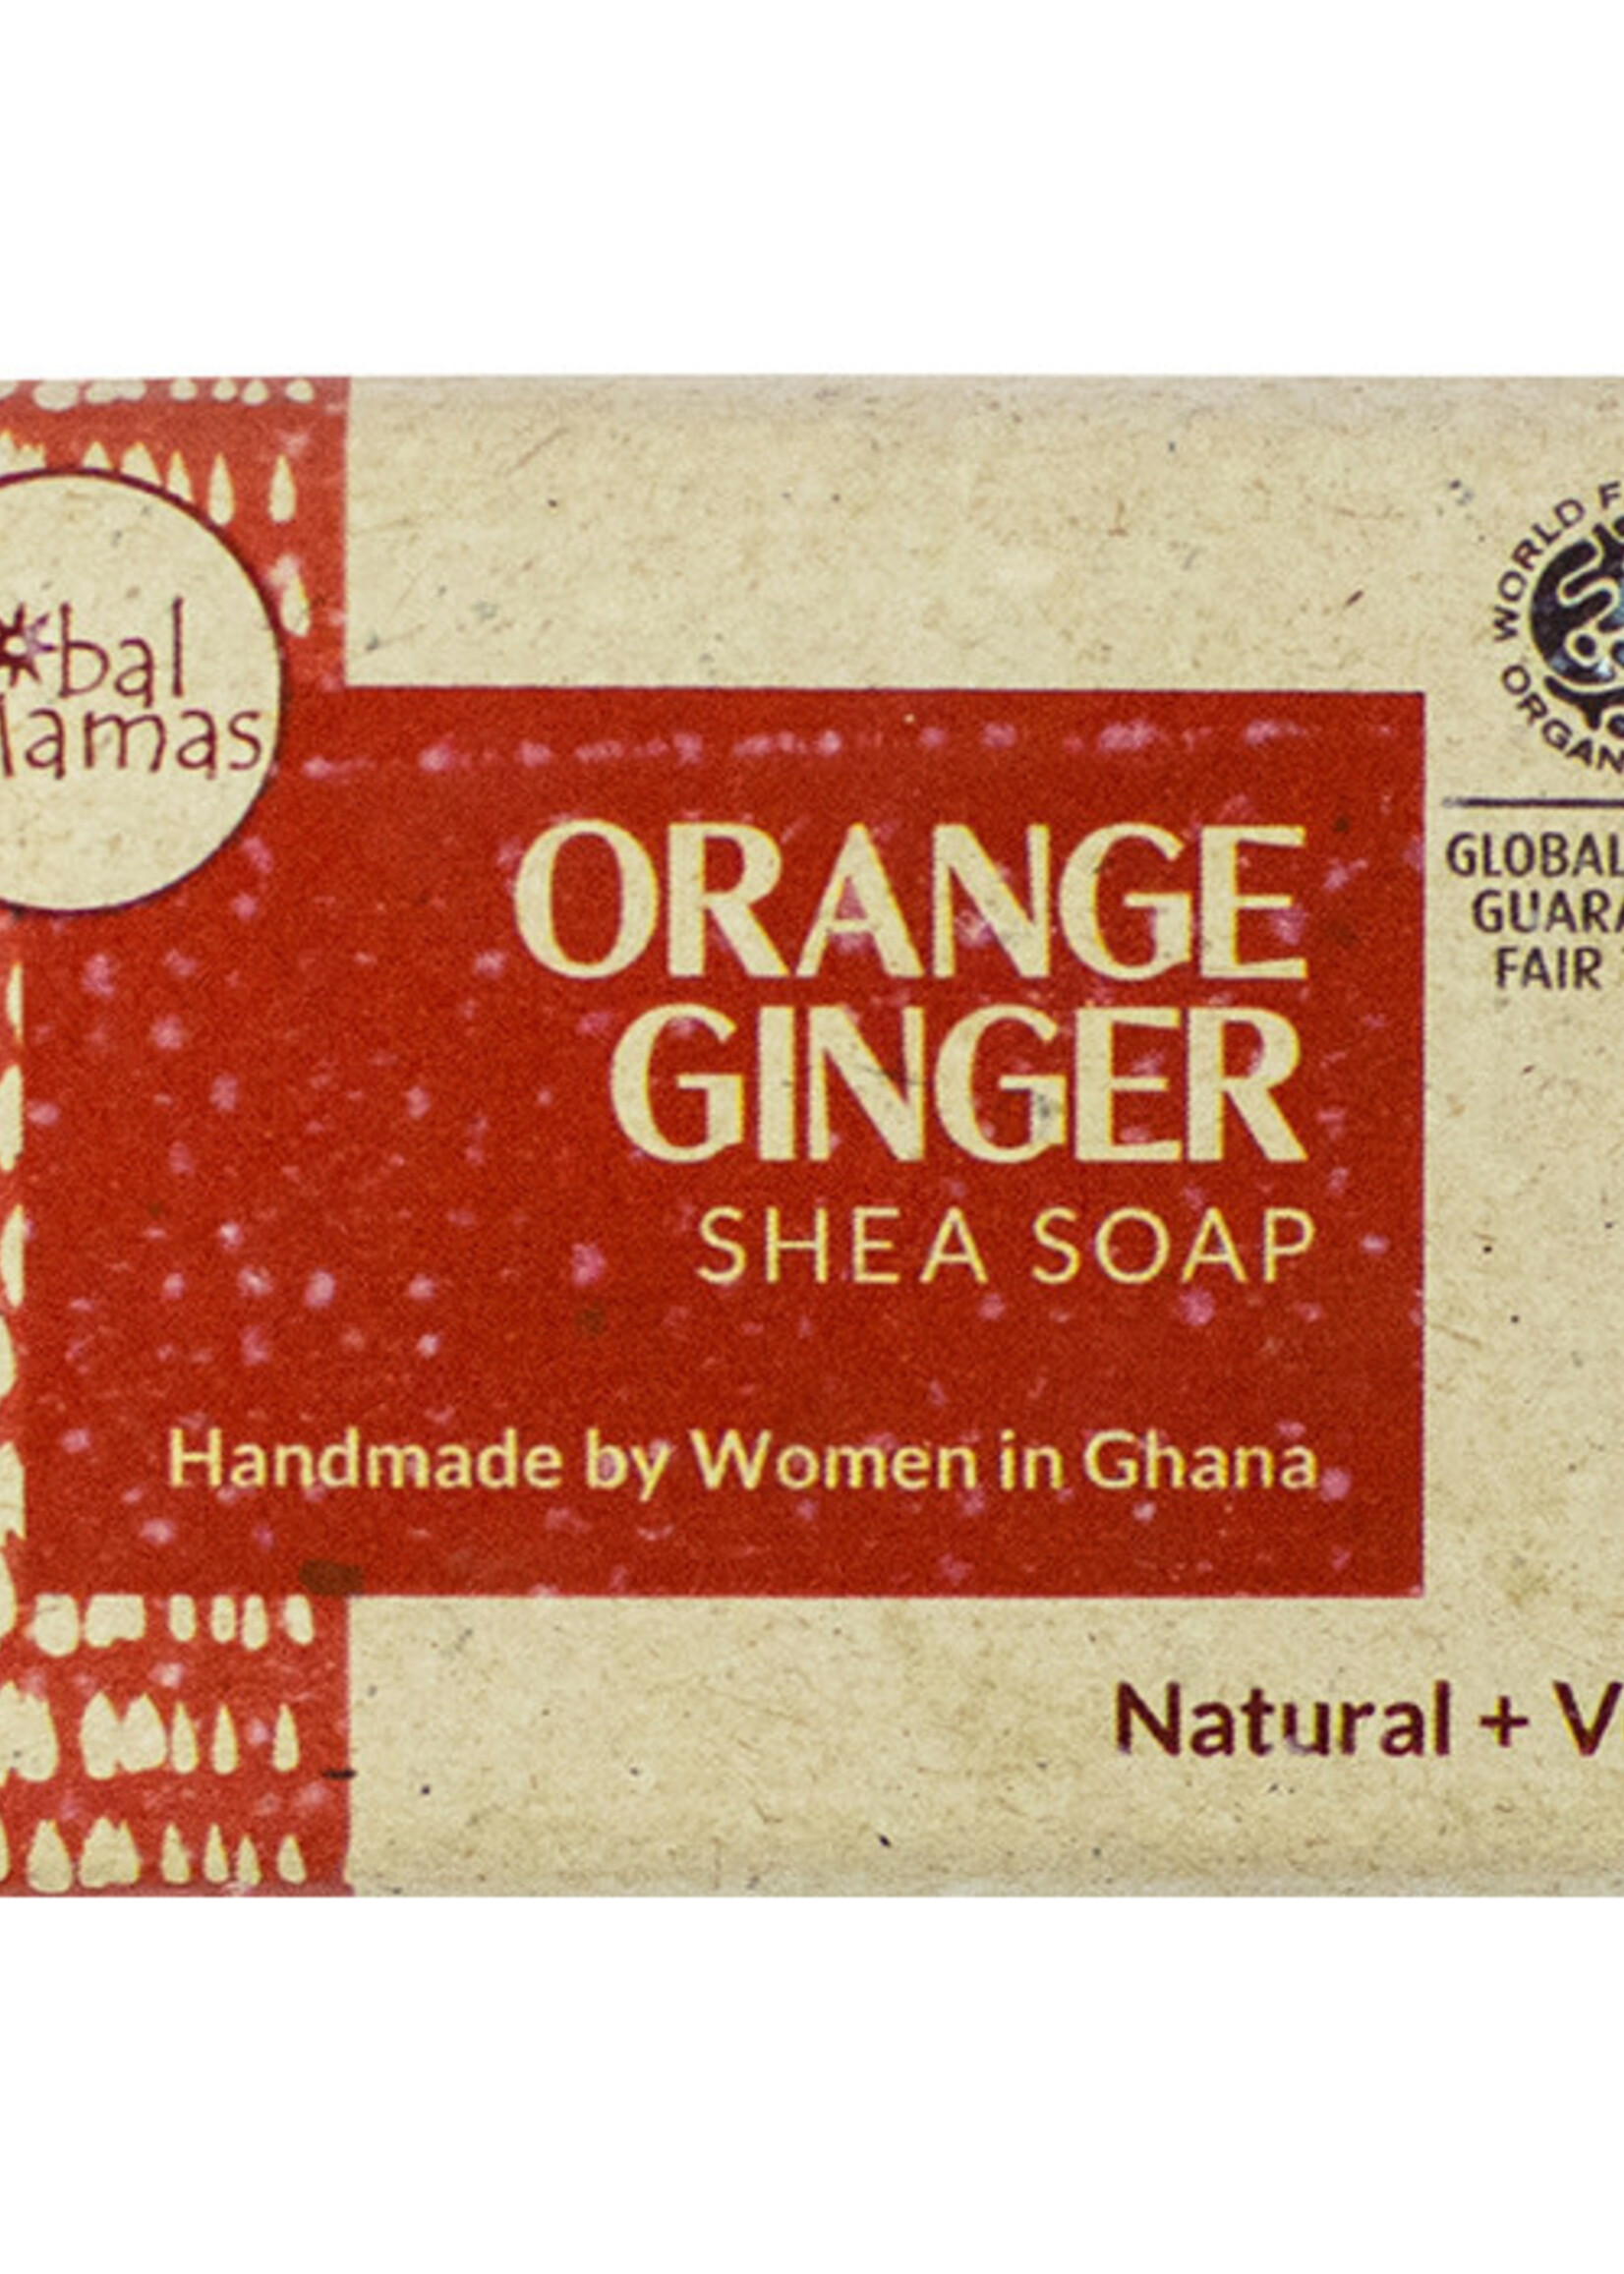 Global Mamas TS Orange Ginger Shea Soap